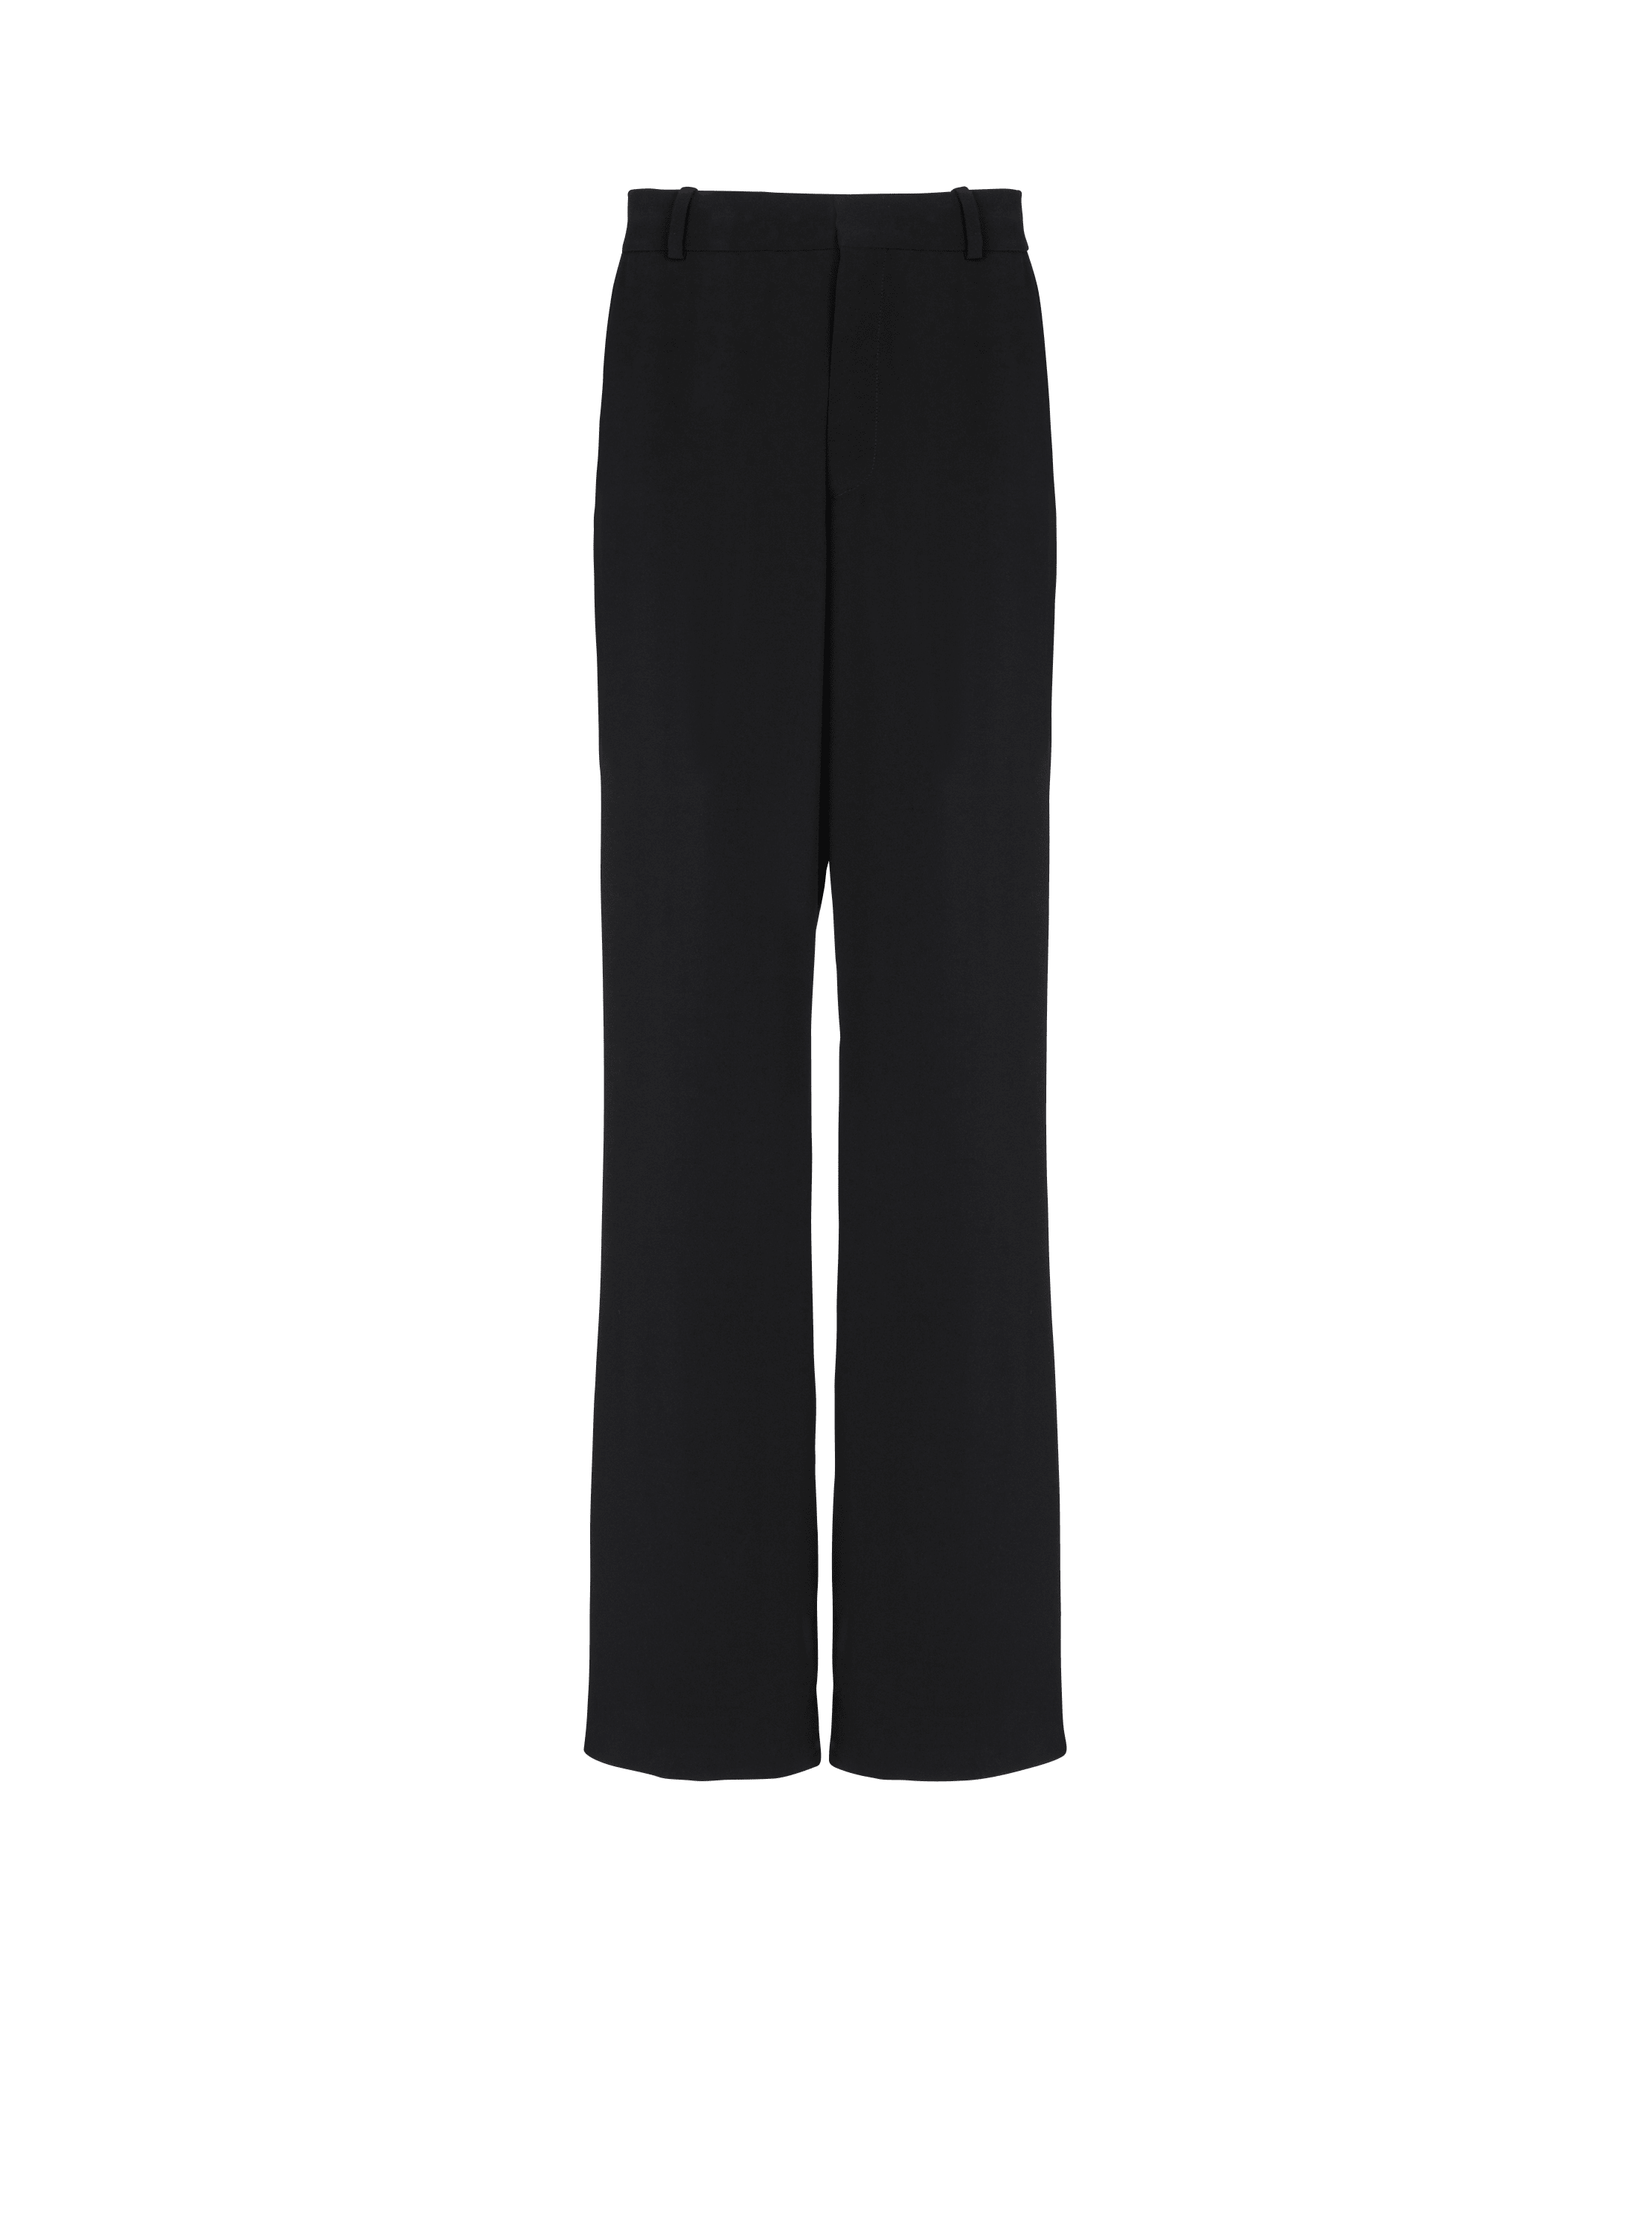 Casual crepe trousers, black, hi-res